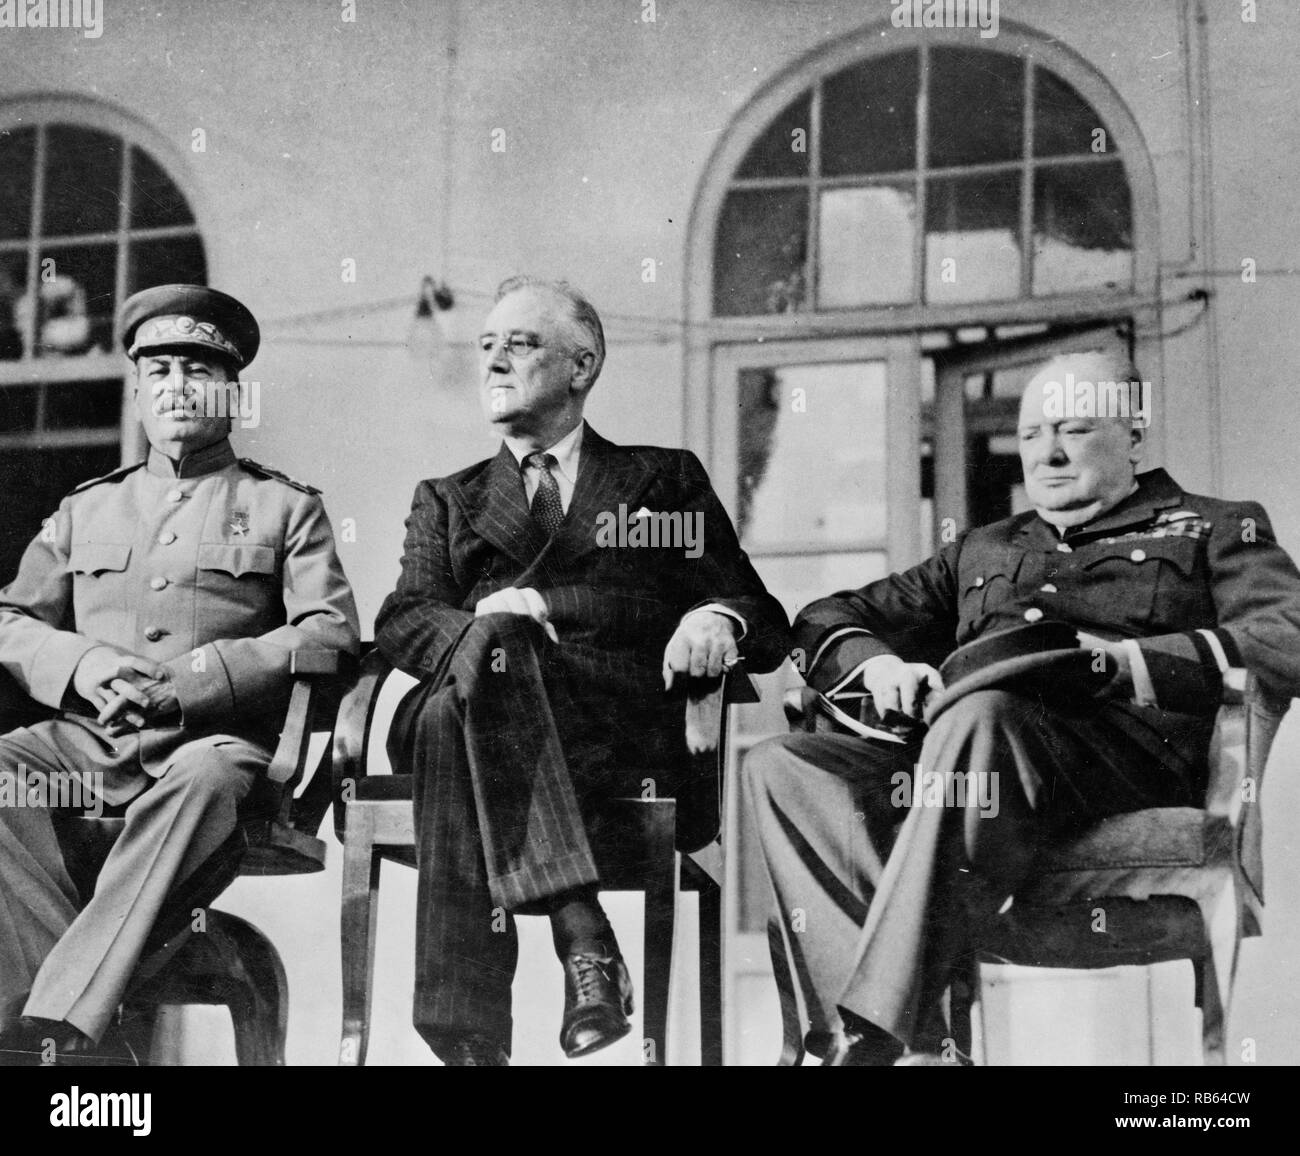 Photographie du président américain Franklin Roosevelt, Joseph Staline, dictateur russe et le Premier ministre britannique Winston Churchill au cours d'une conférence en novembre. Datée 1943 Banque D'Images